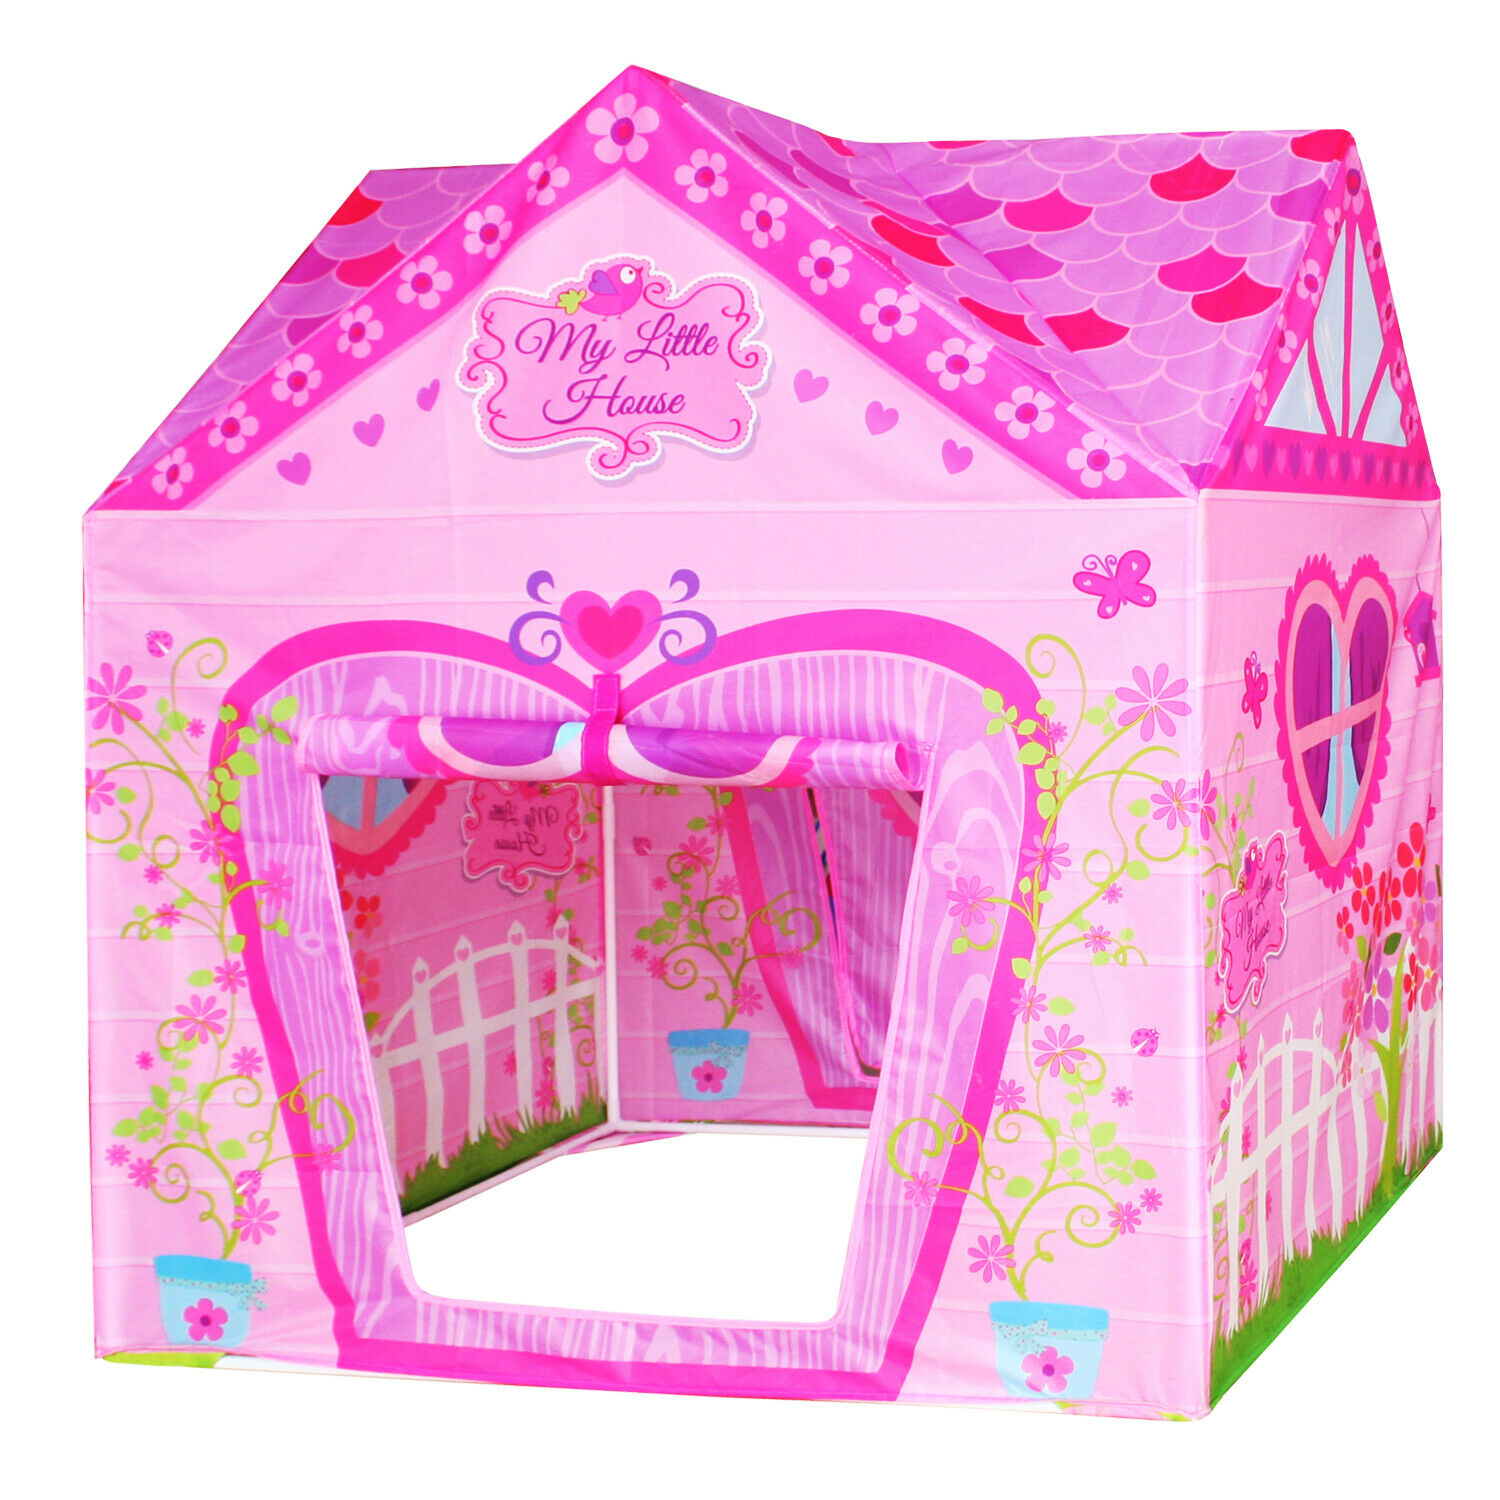 Flower Princess Castle Girls Pink Palace Play Tent Kids Pretend Garden Playhouse